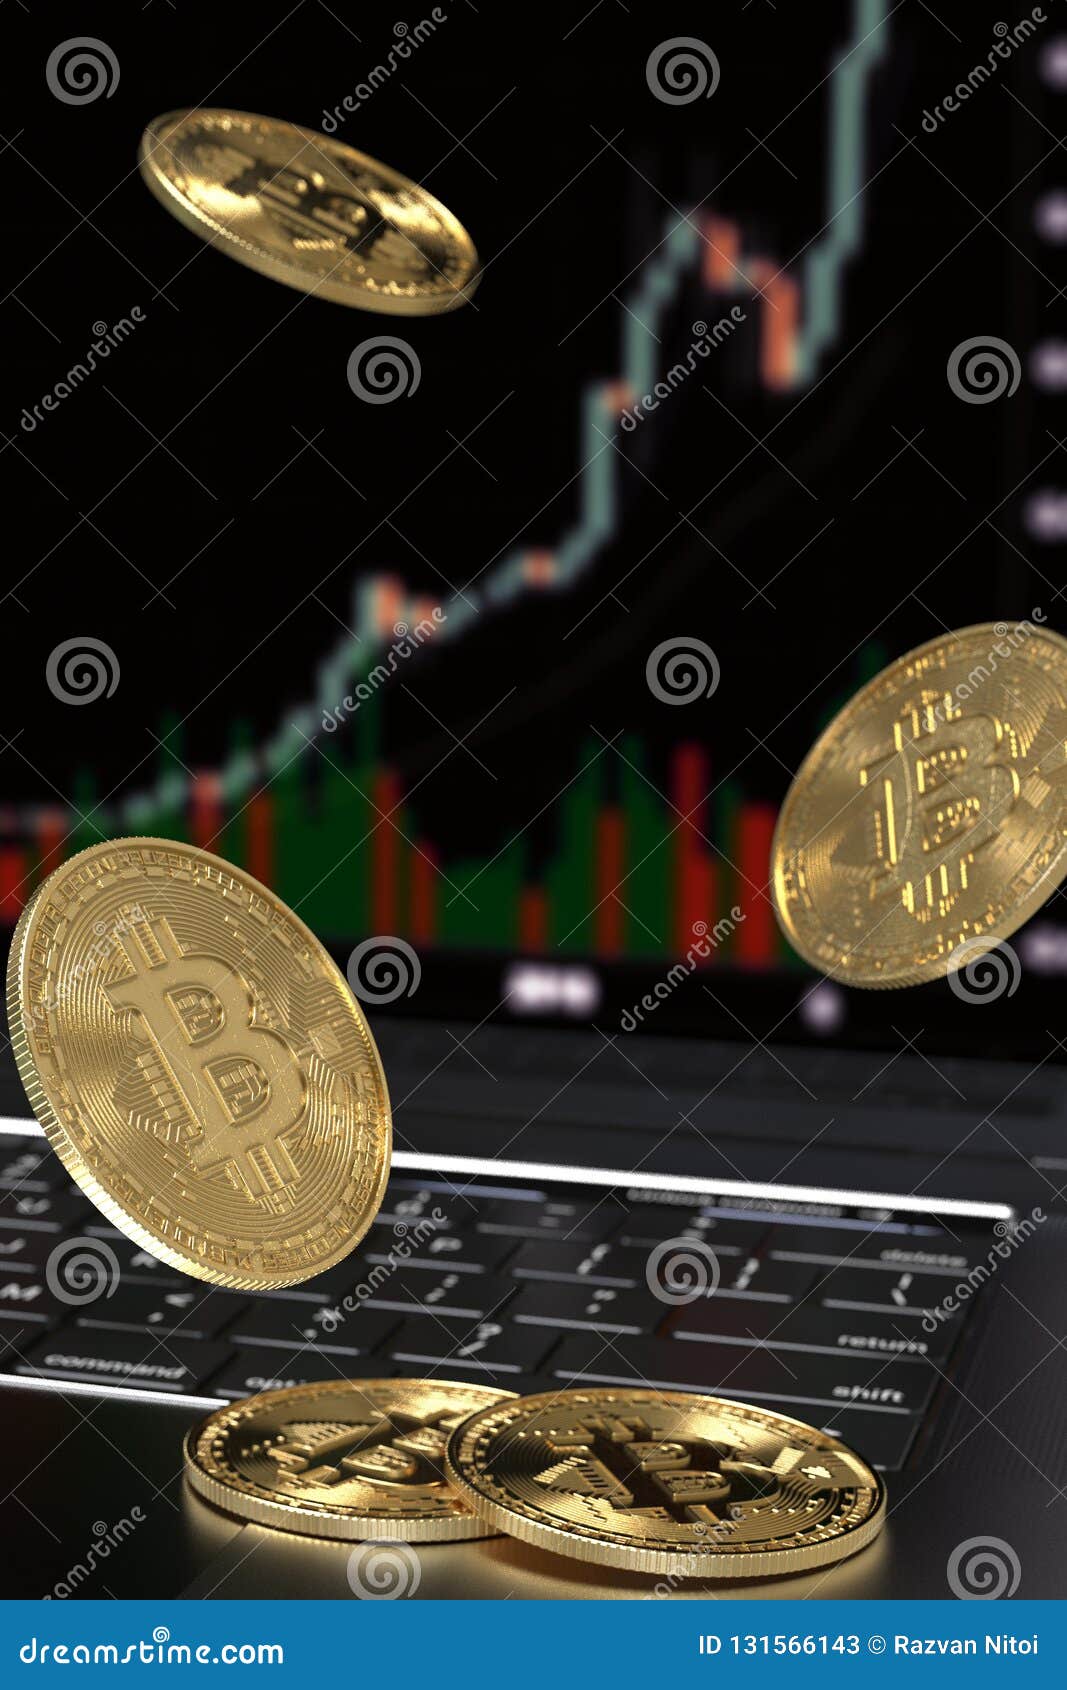 bitcoin pe laptop)